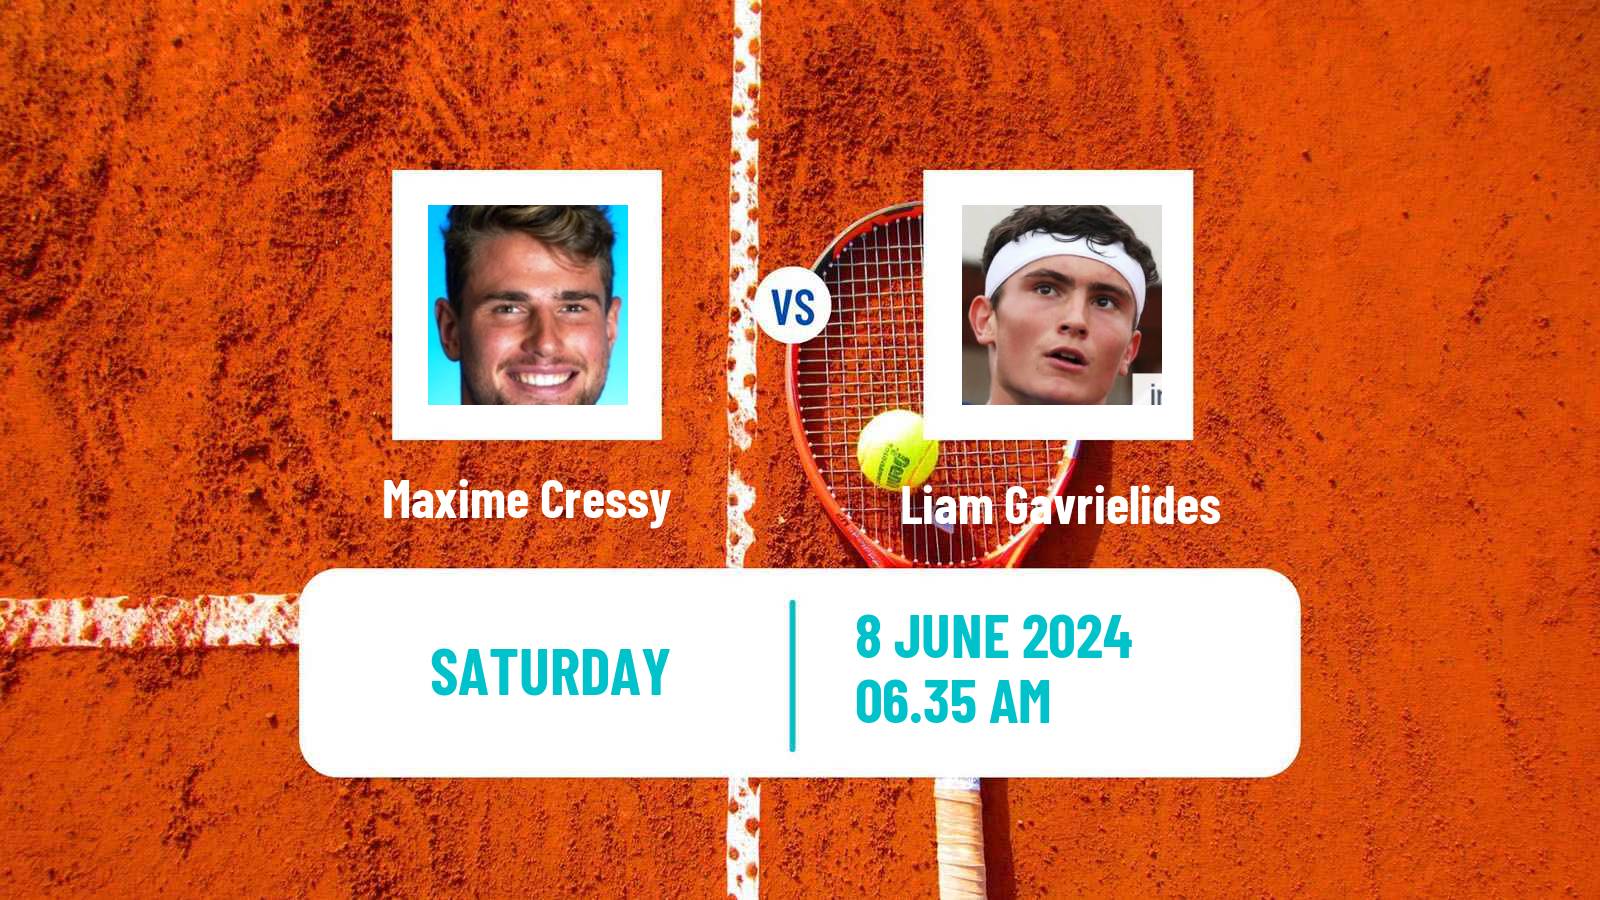 Tennis ATP Stuttgart Maxime Cressy - Liam Gavrielides